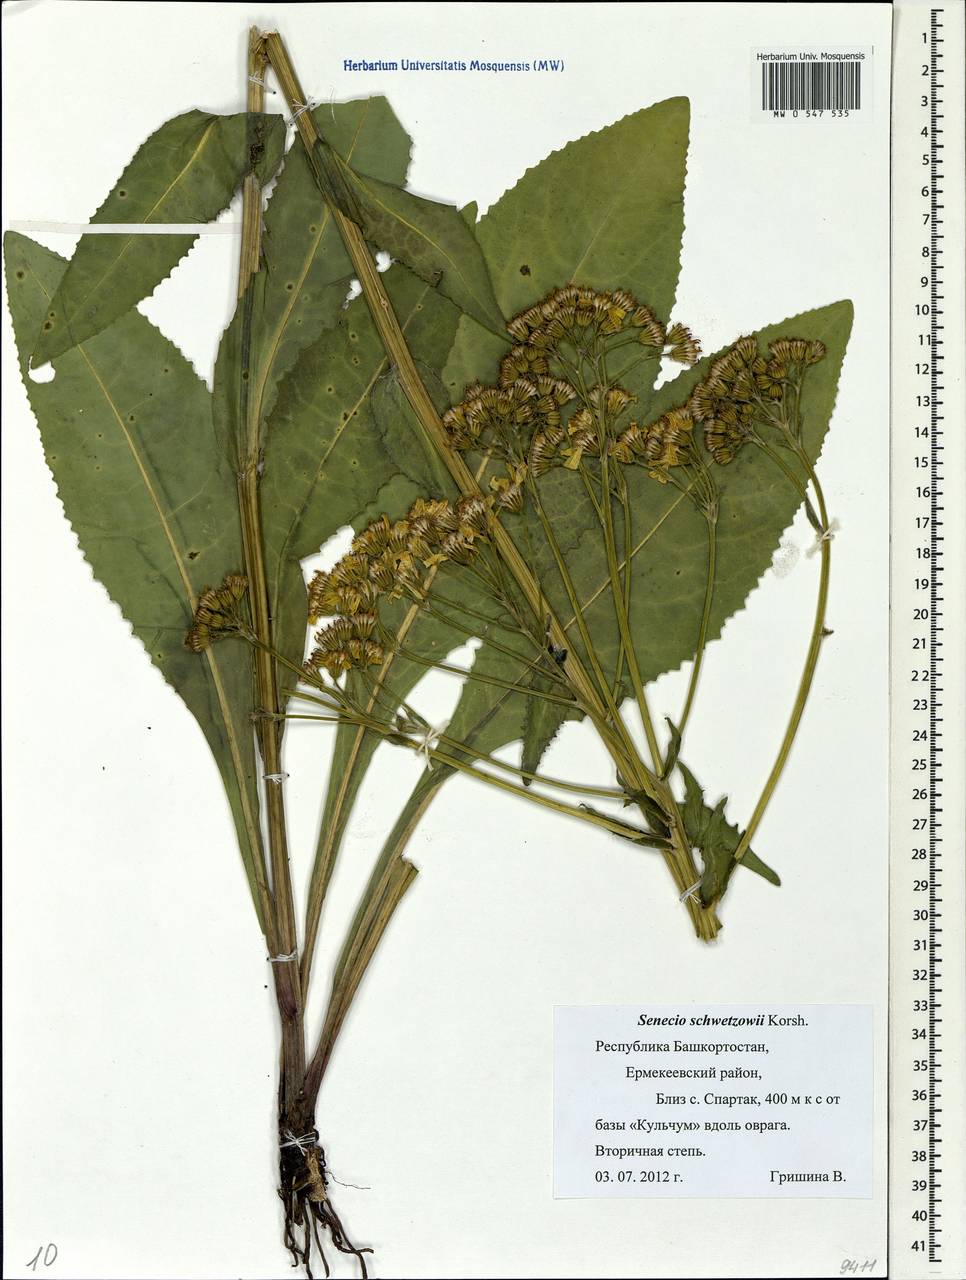 Senecio macrophyllus M. Bieb., Eastern Europe, Eastern region (E10) (Russia)